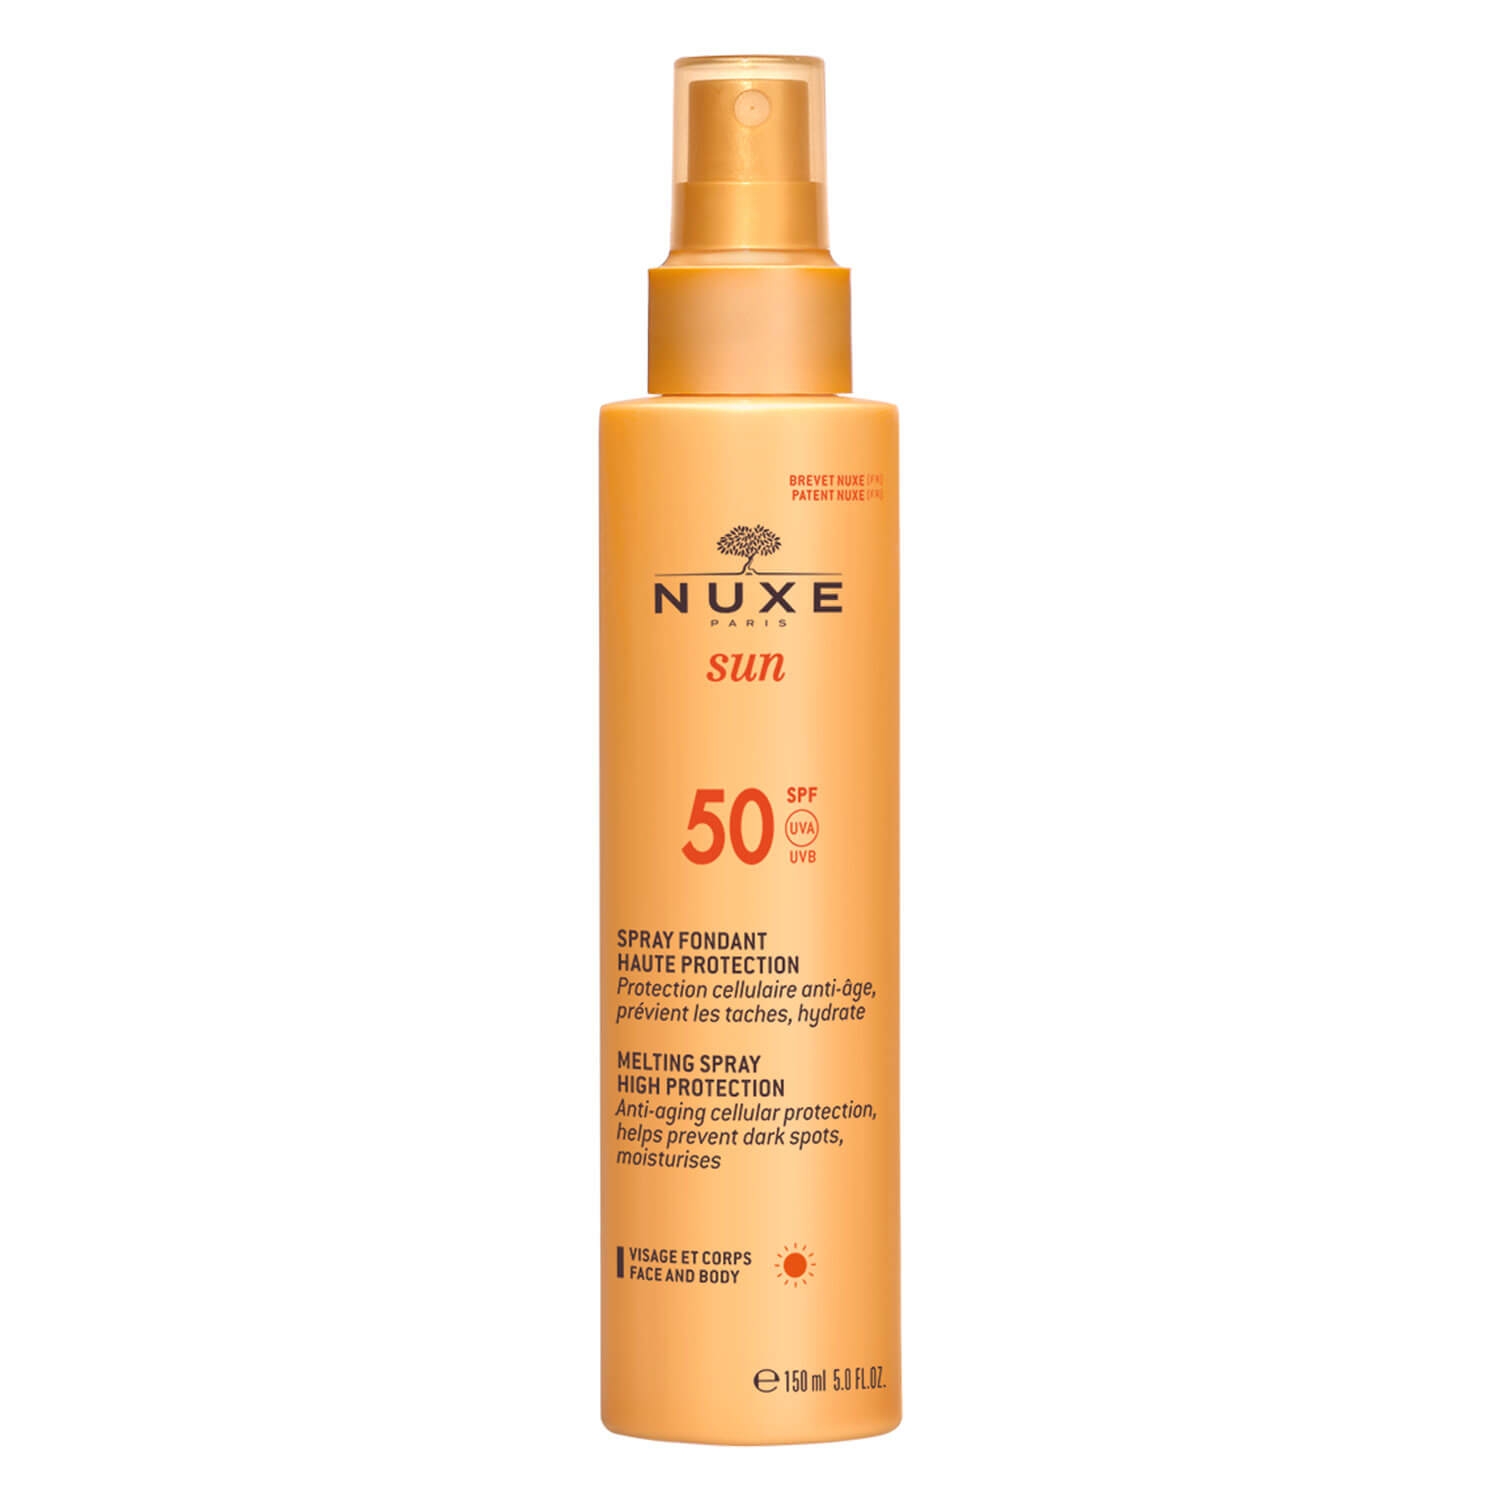 Produktbild von Nuxe Sun - Spray Fondant Haute Protection SPF50